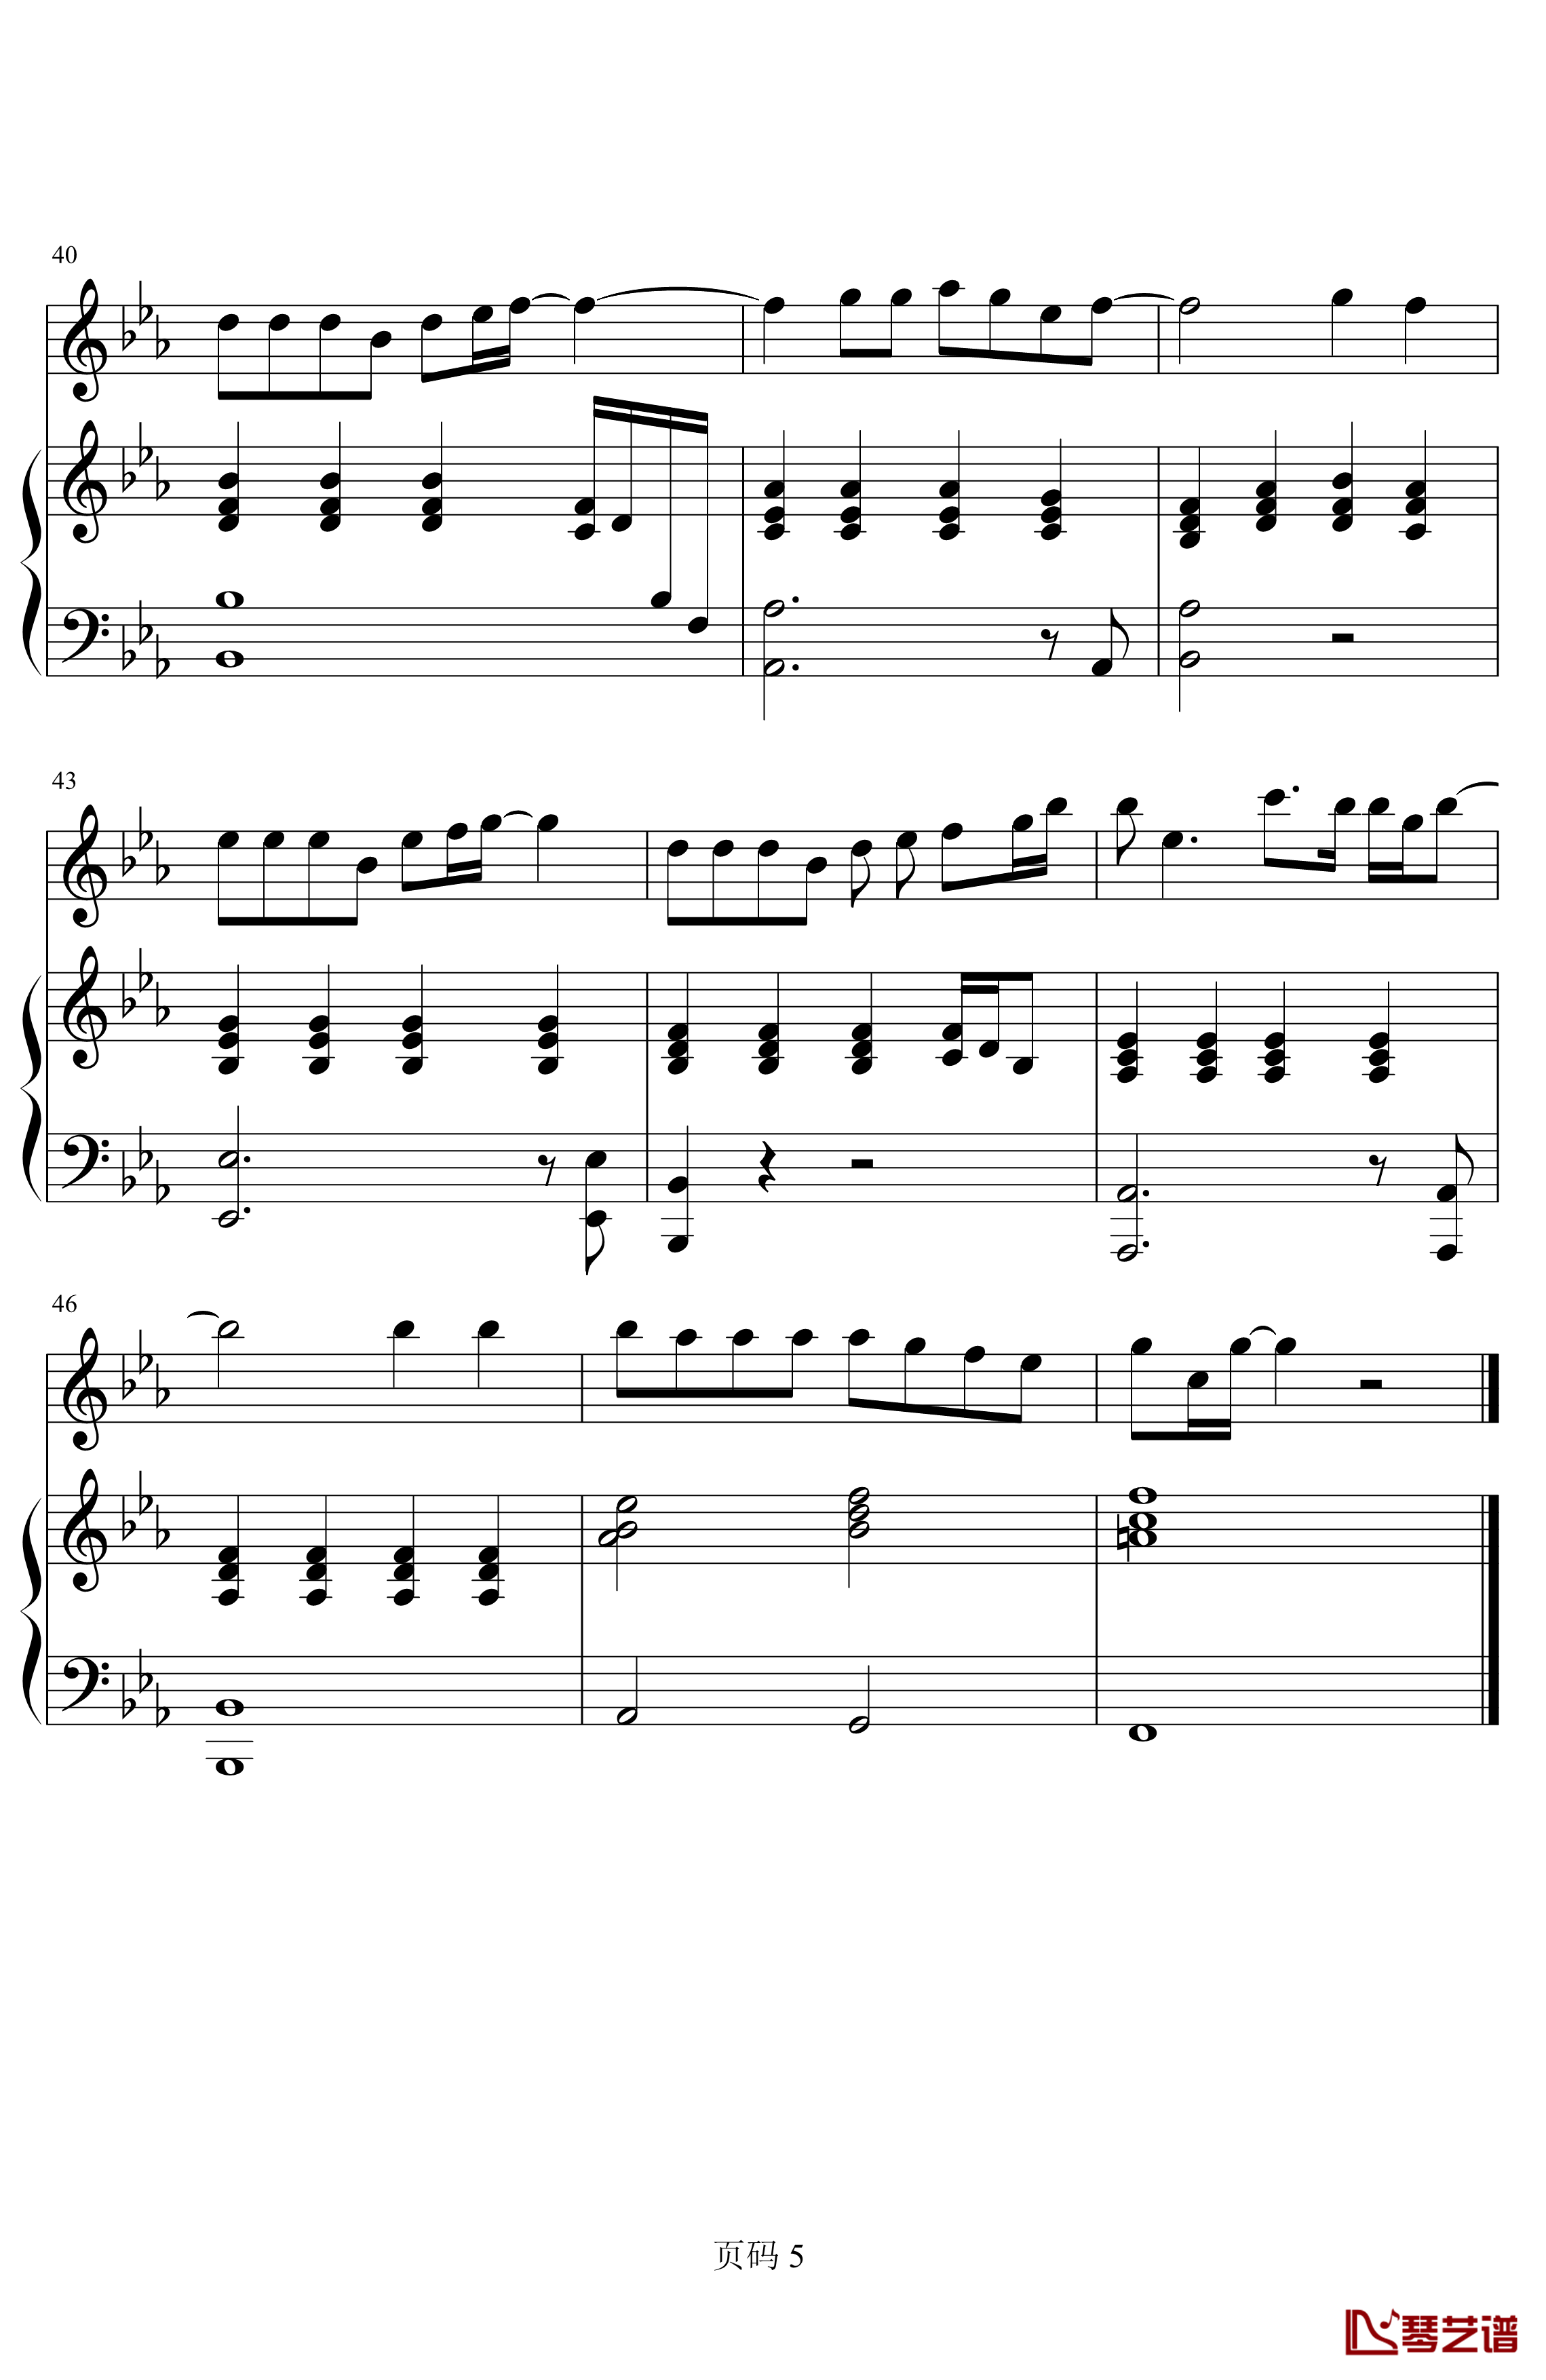 唯一钢琴谱-简化-王力宏5